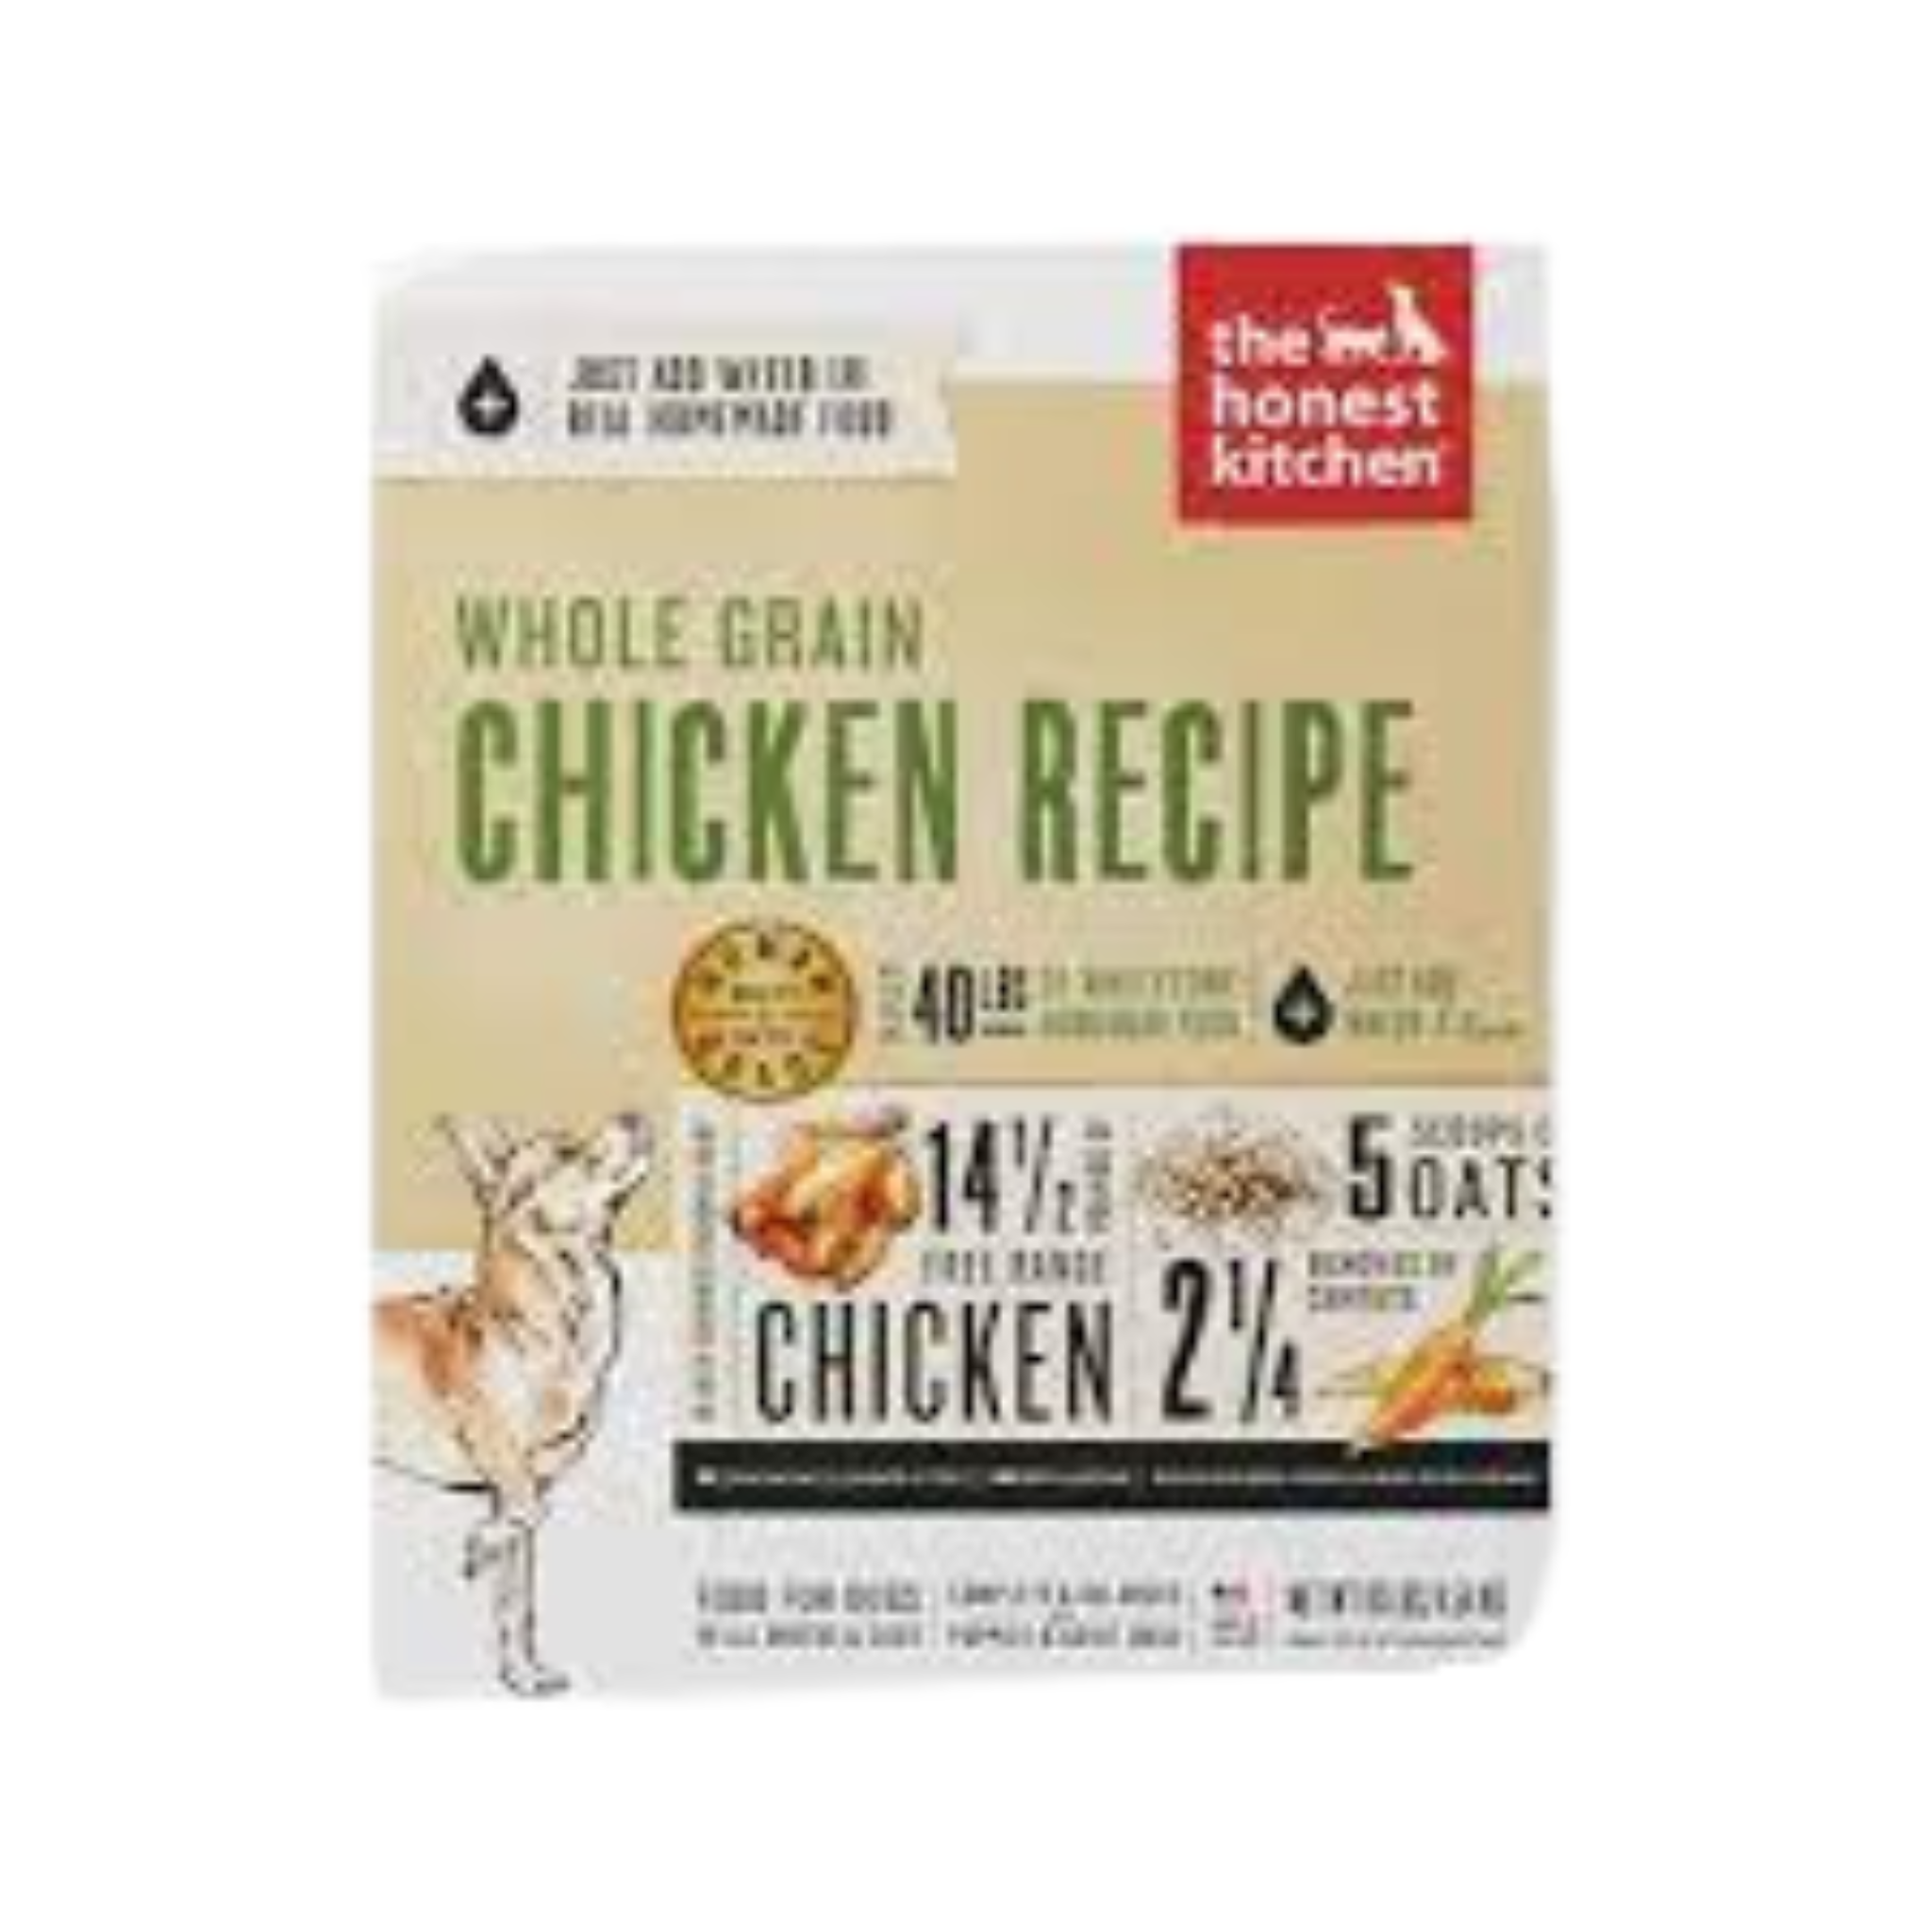 The Honest Chicken- Whole Grain Chicken Recipe